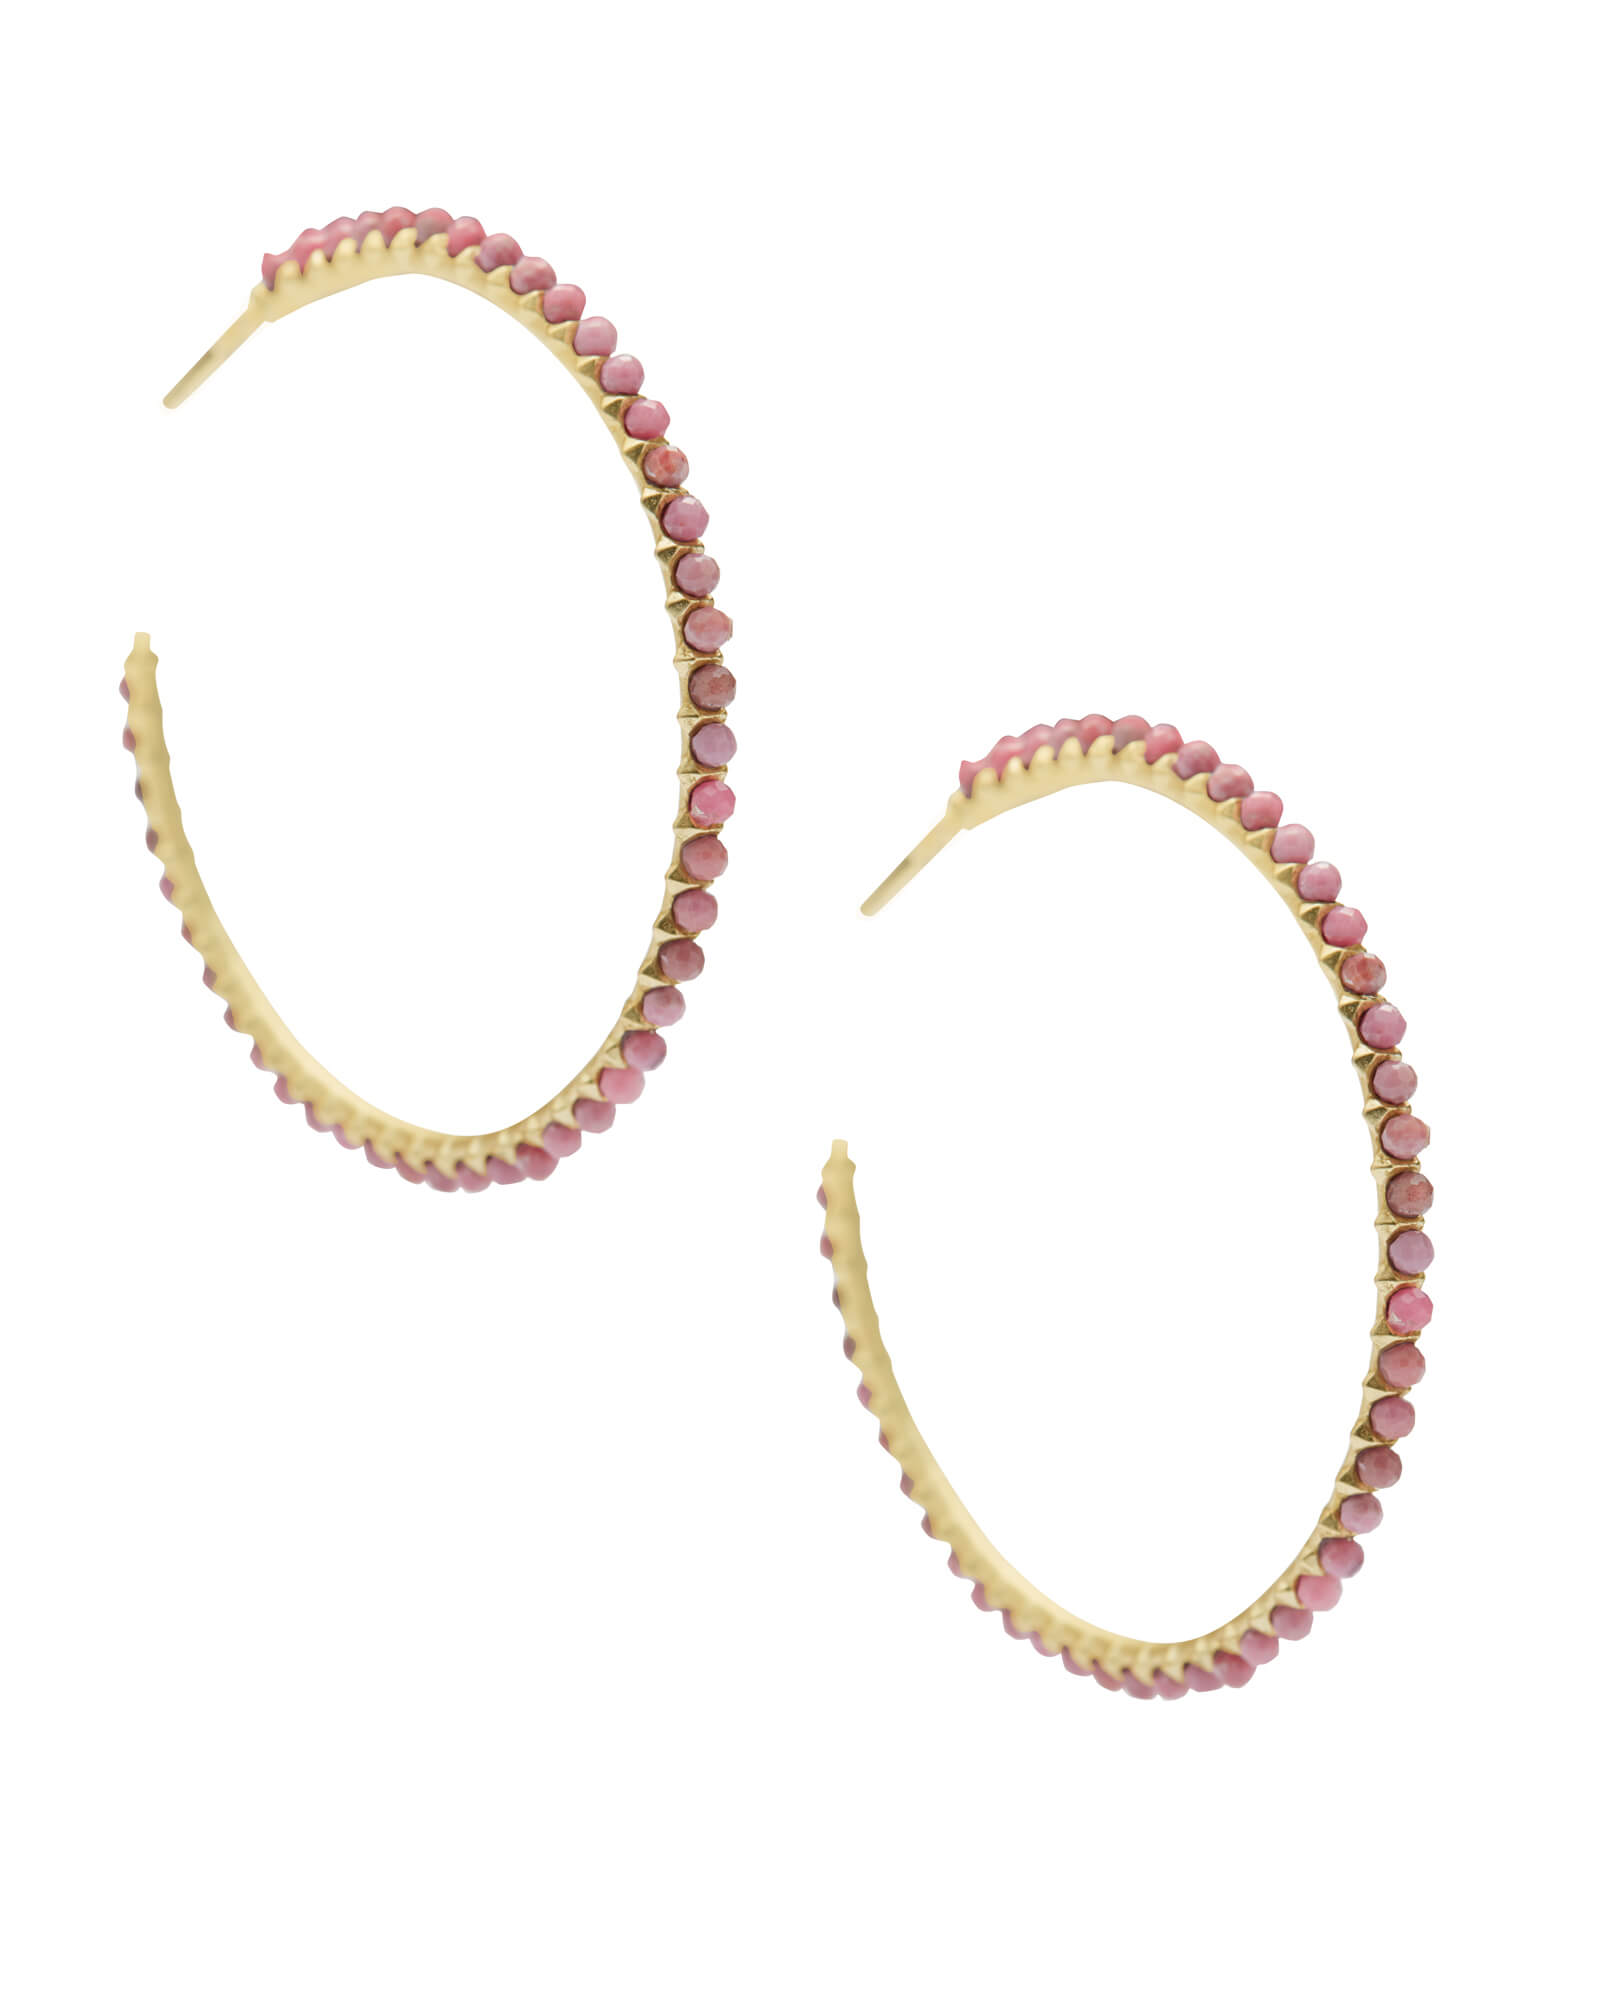 Birdie Gold Hoop Earrings in Teal Agate | Kendra Scott